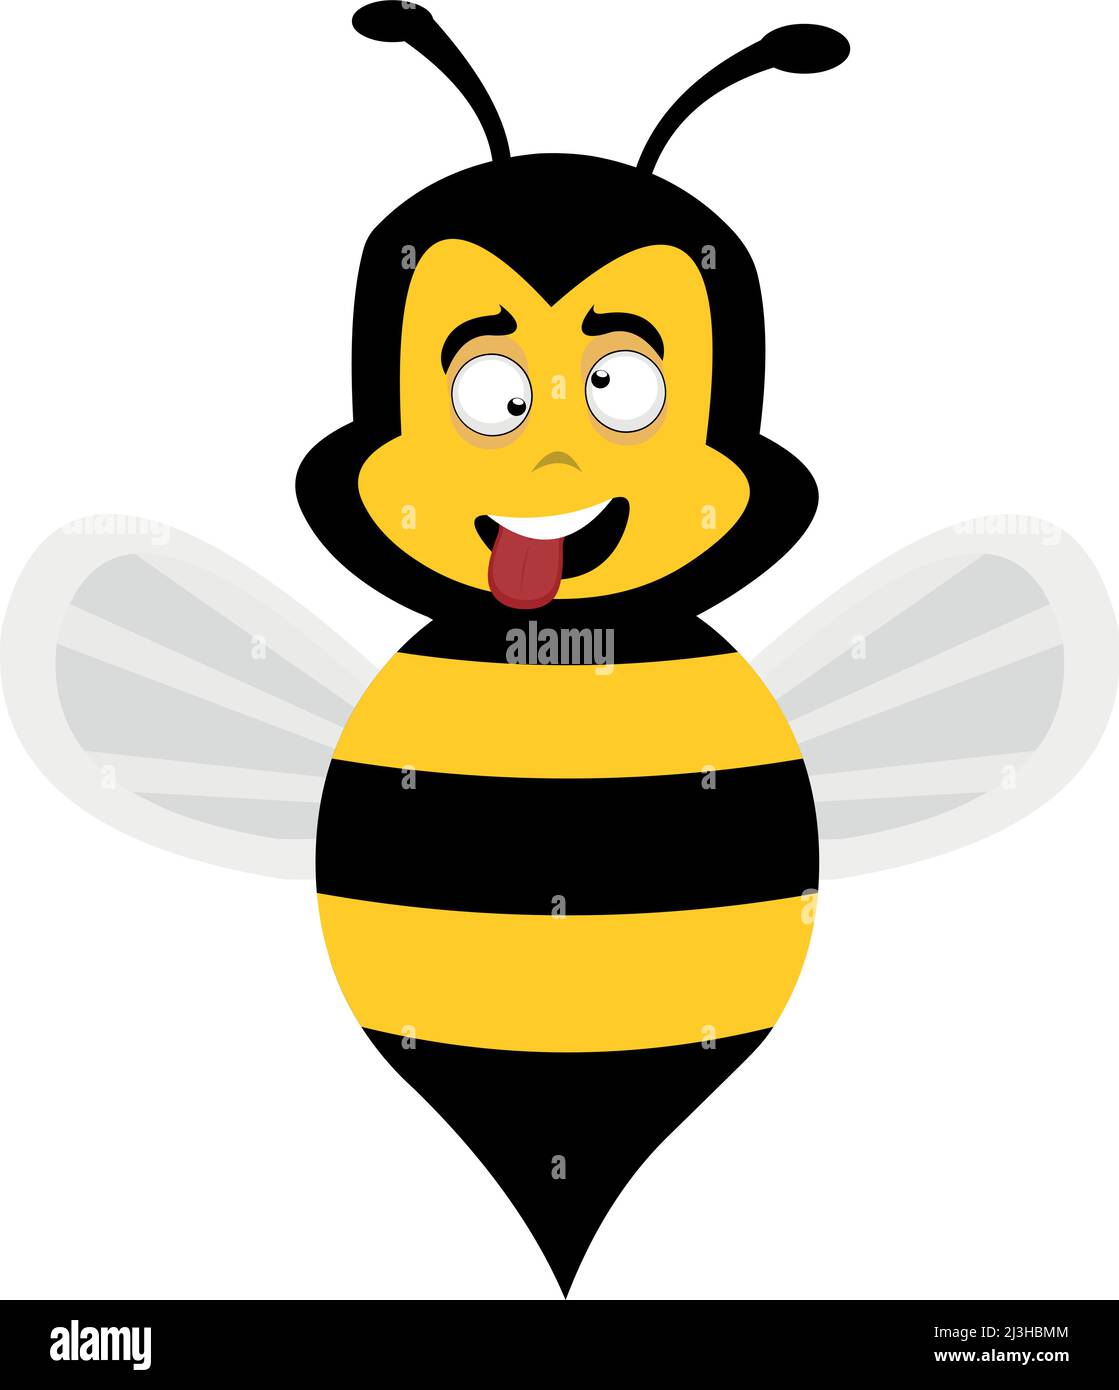 Illustrazione vettoriale di un'ape cartoon con un'espressione divertente, stupida, pazza Illustrazione Vettoriale